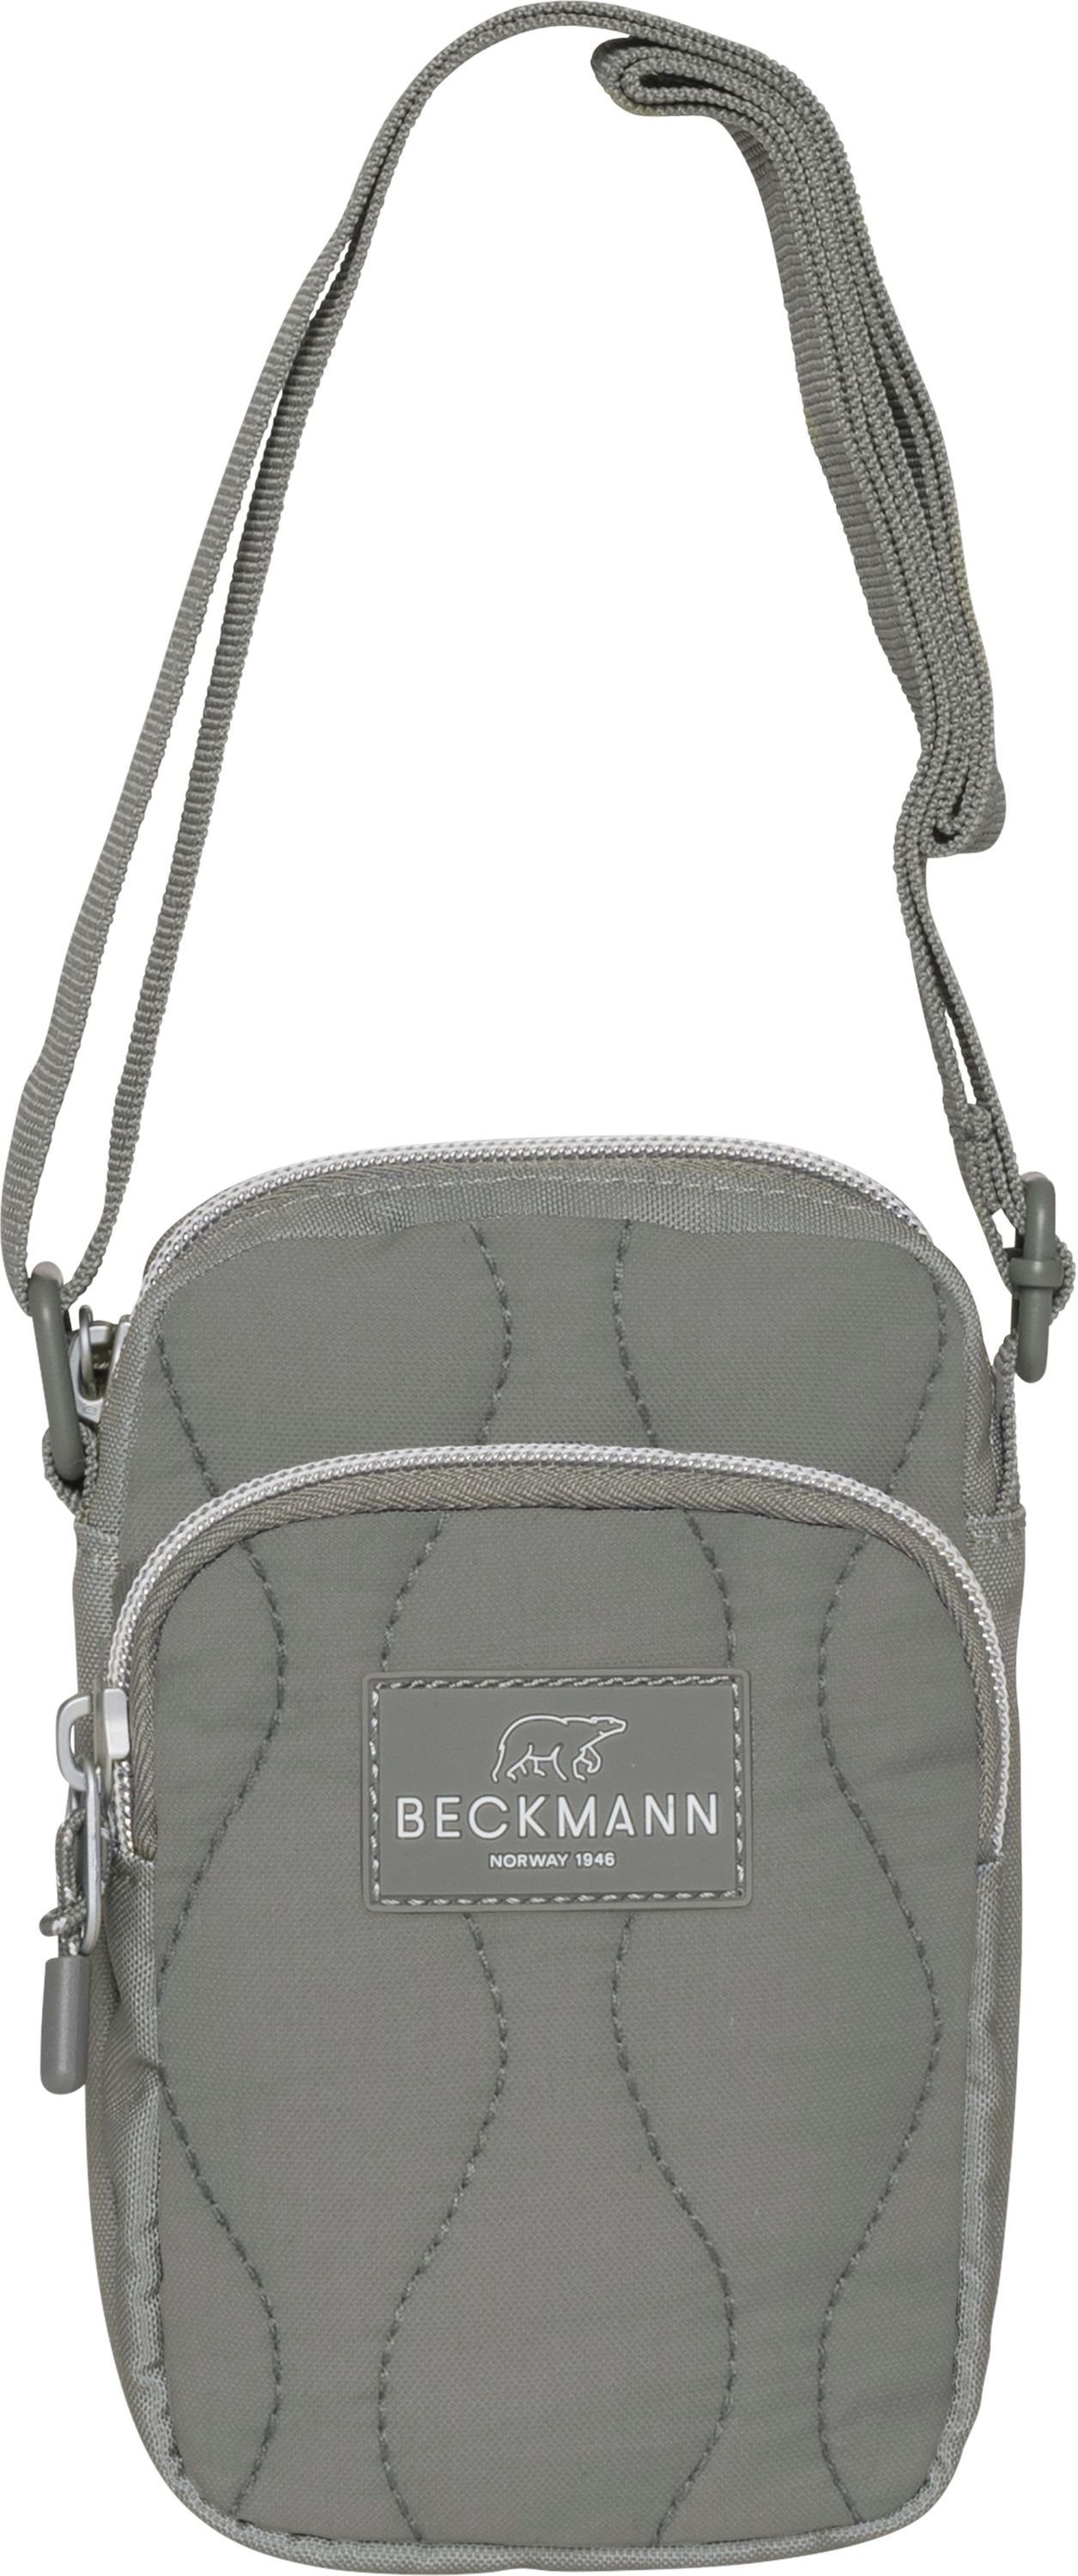 Beckmann Bauchtasche Handtasche Umhängetasche Green Stück), (1 Crossbodybag Sport Padded Schultertasche